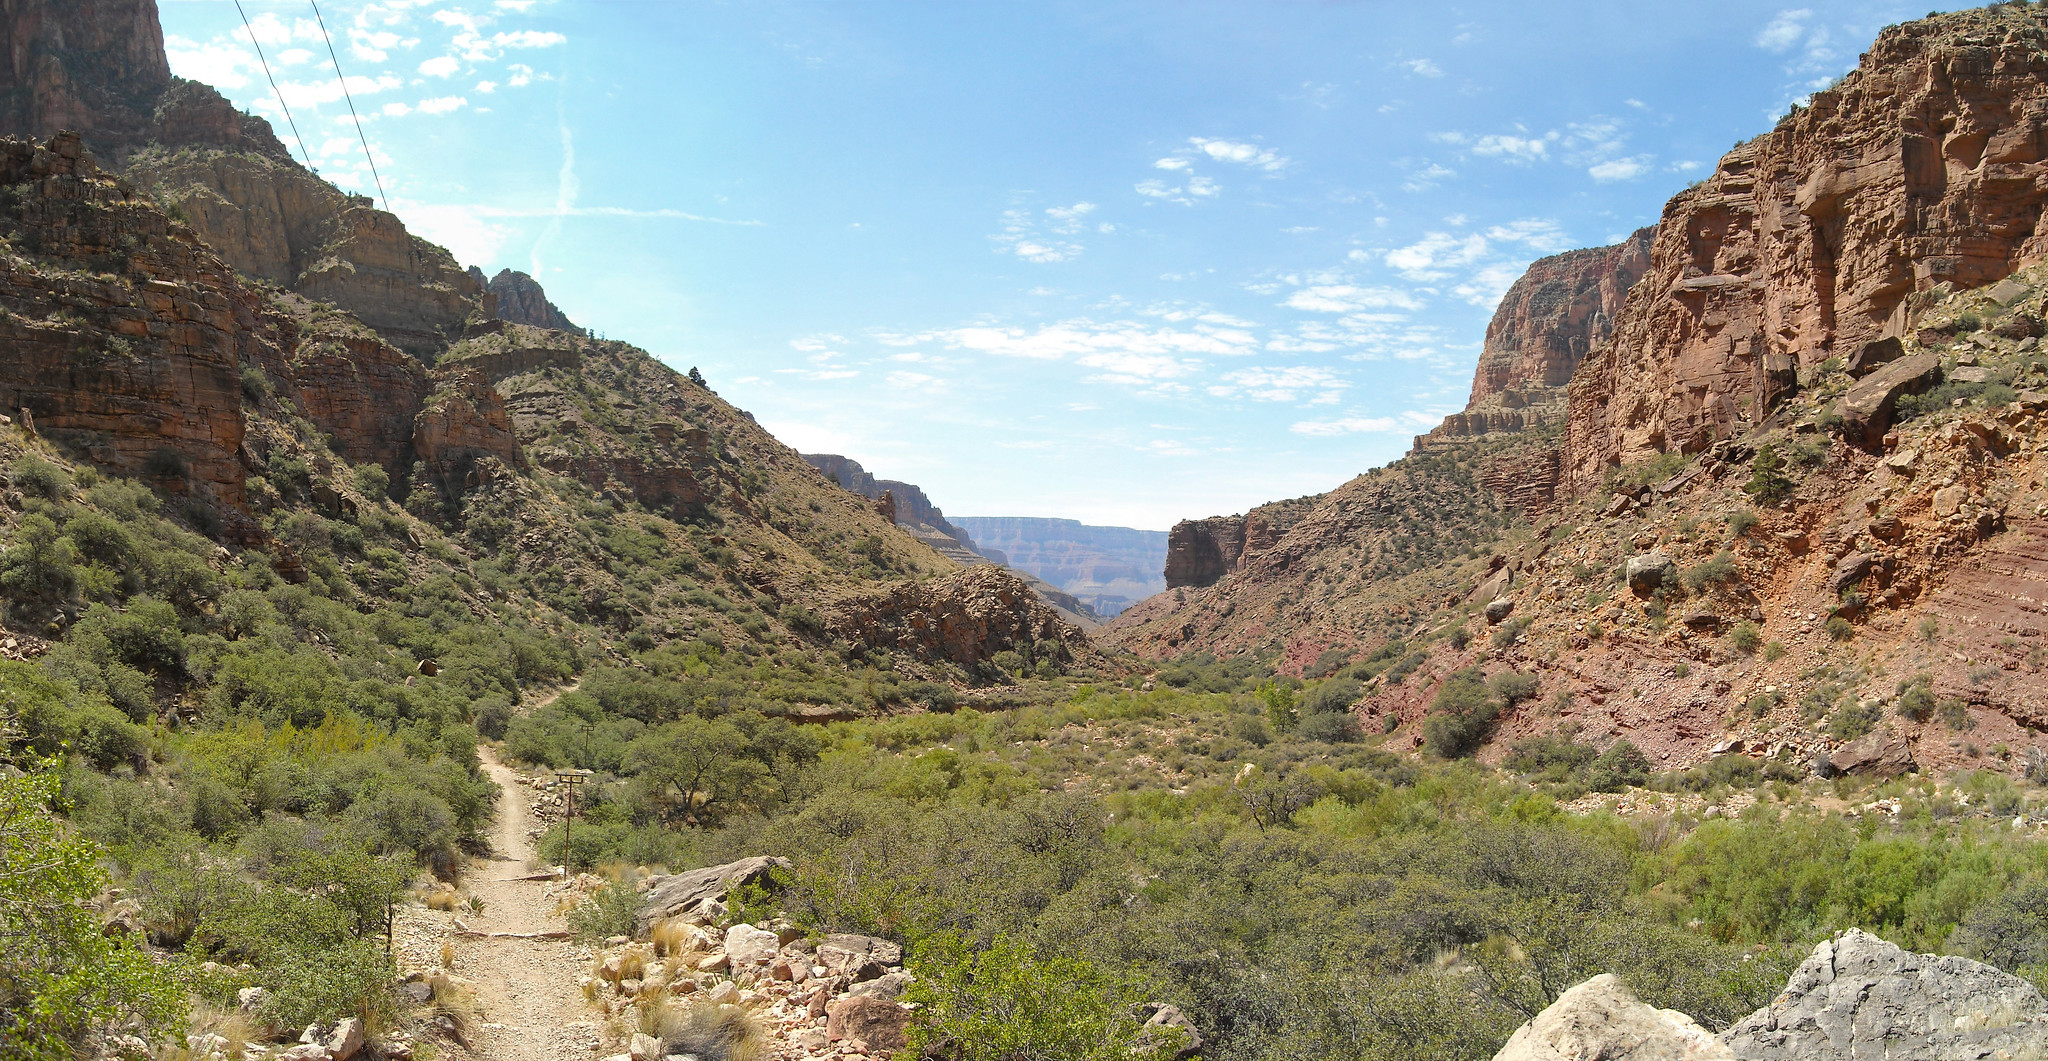 A trail descends through a narrow canyon